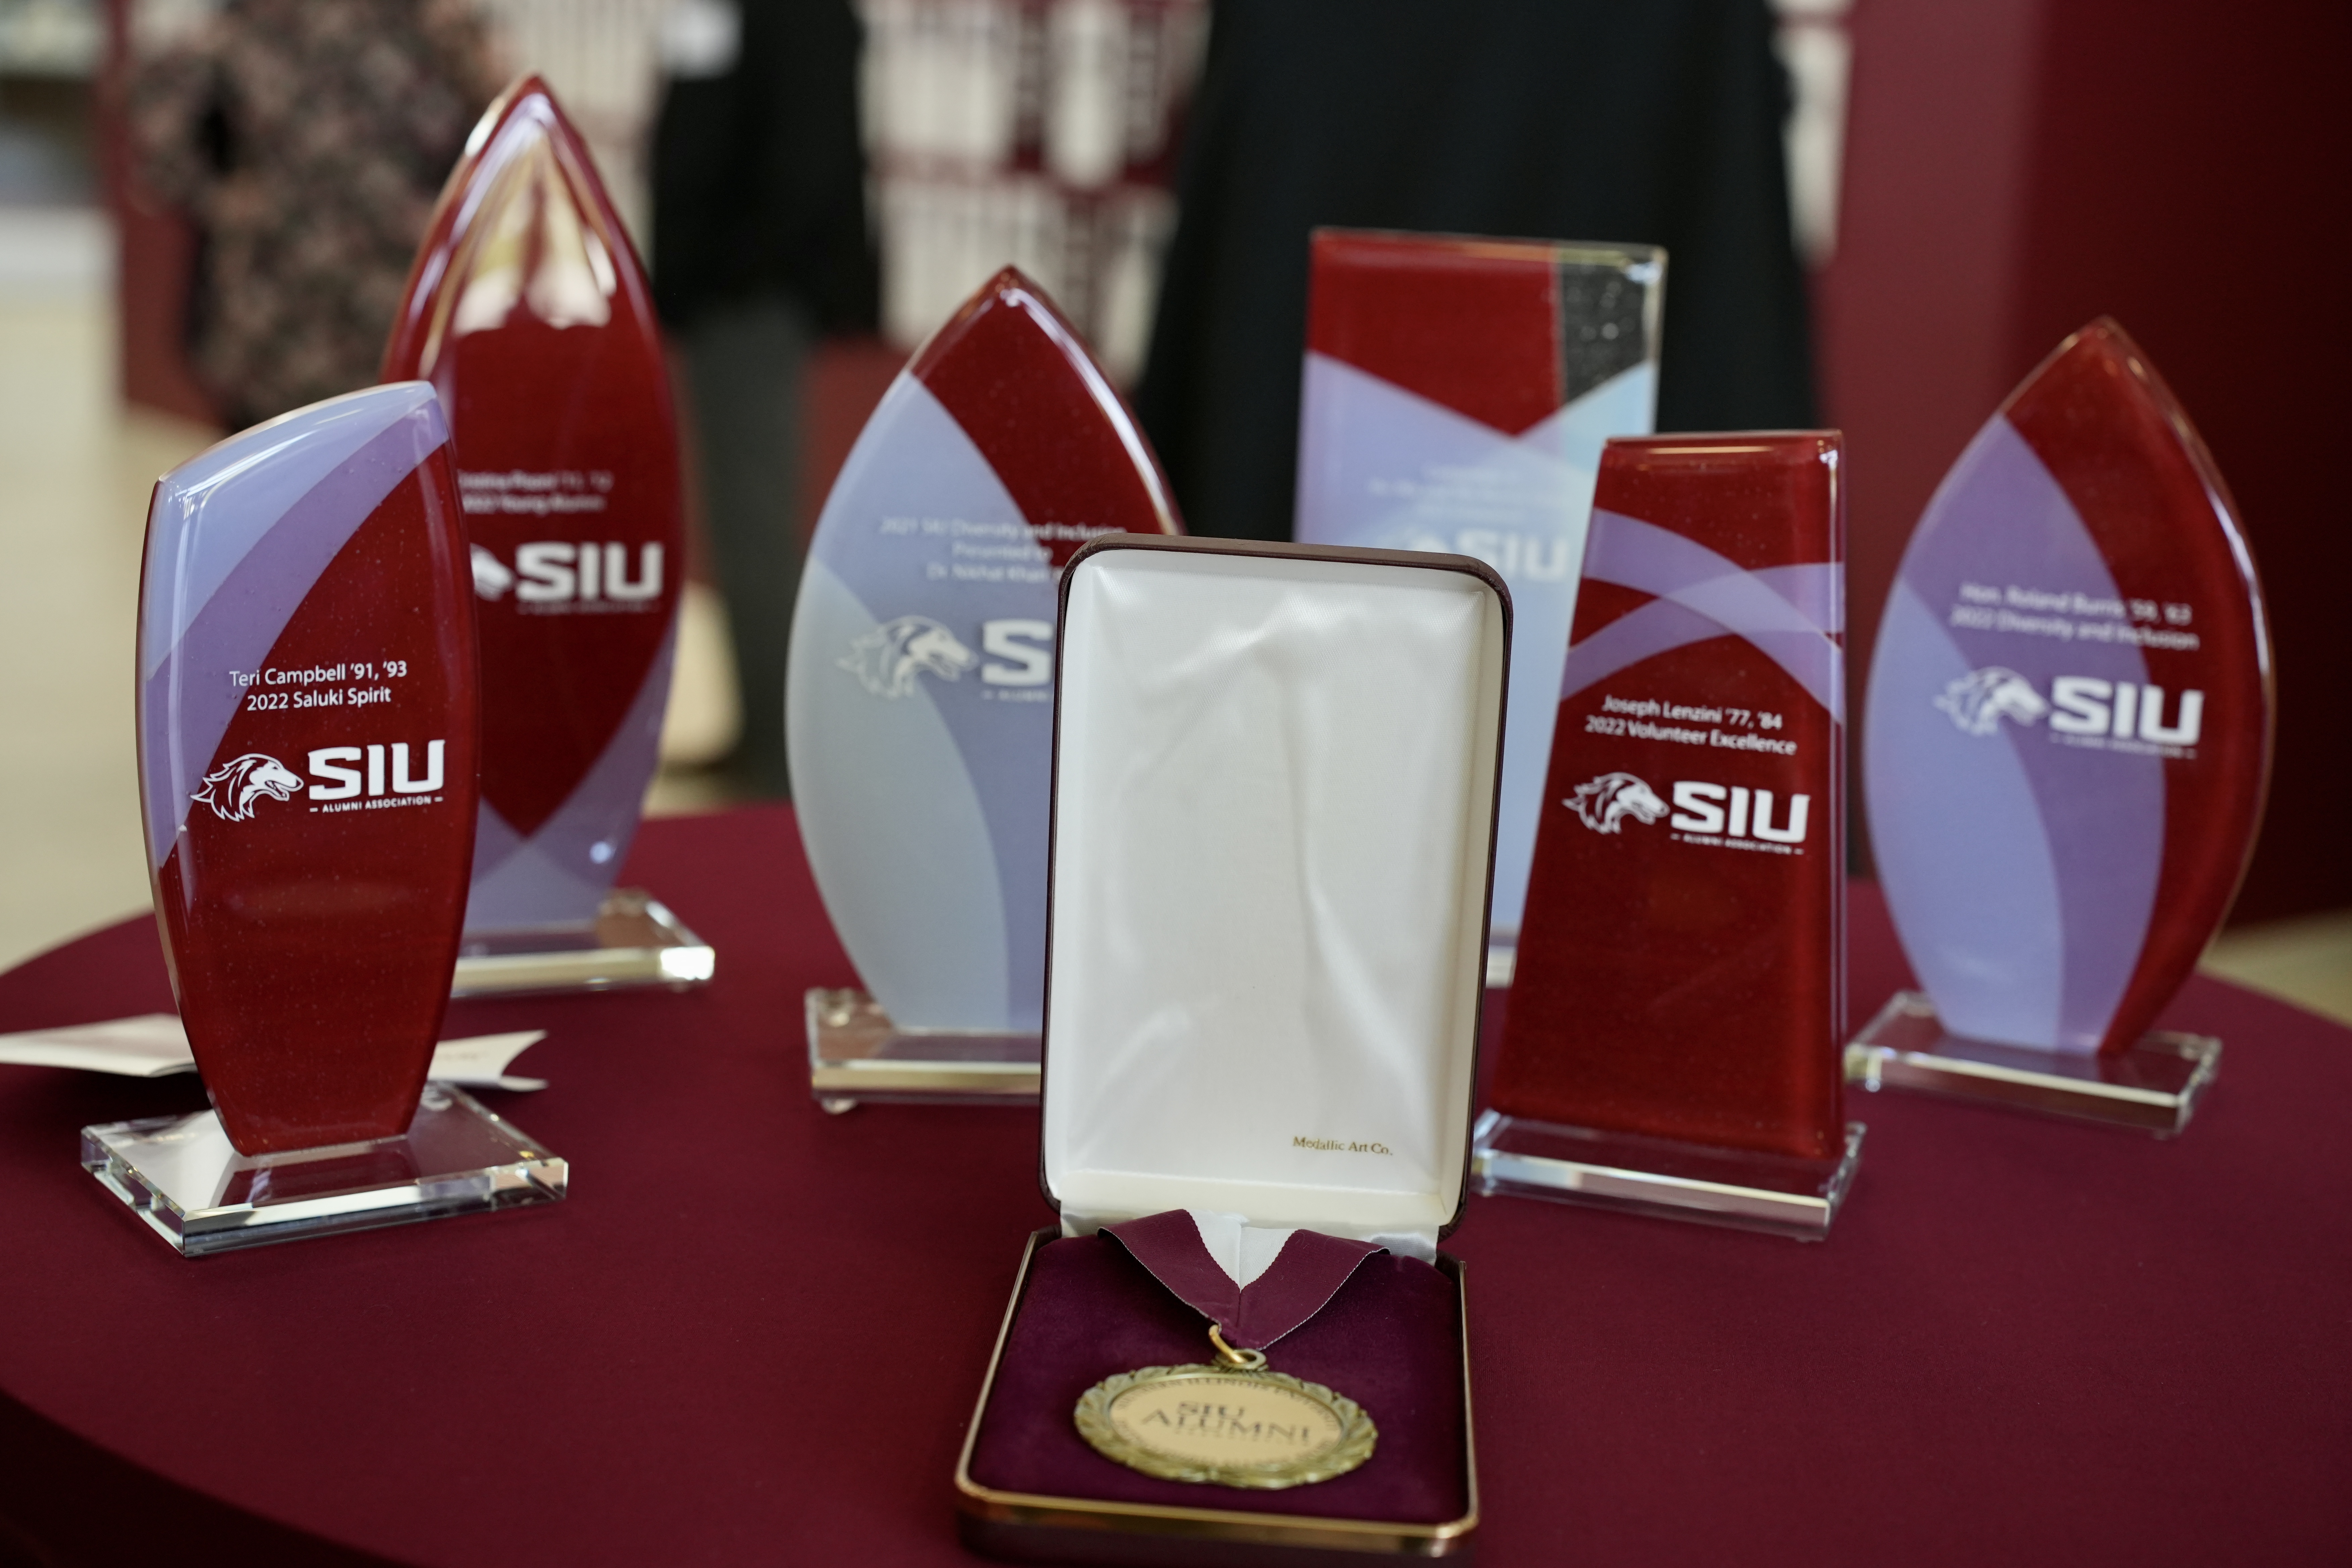 Previous Recipients, SIU Alumni Association